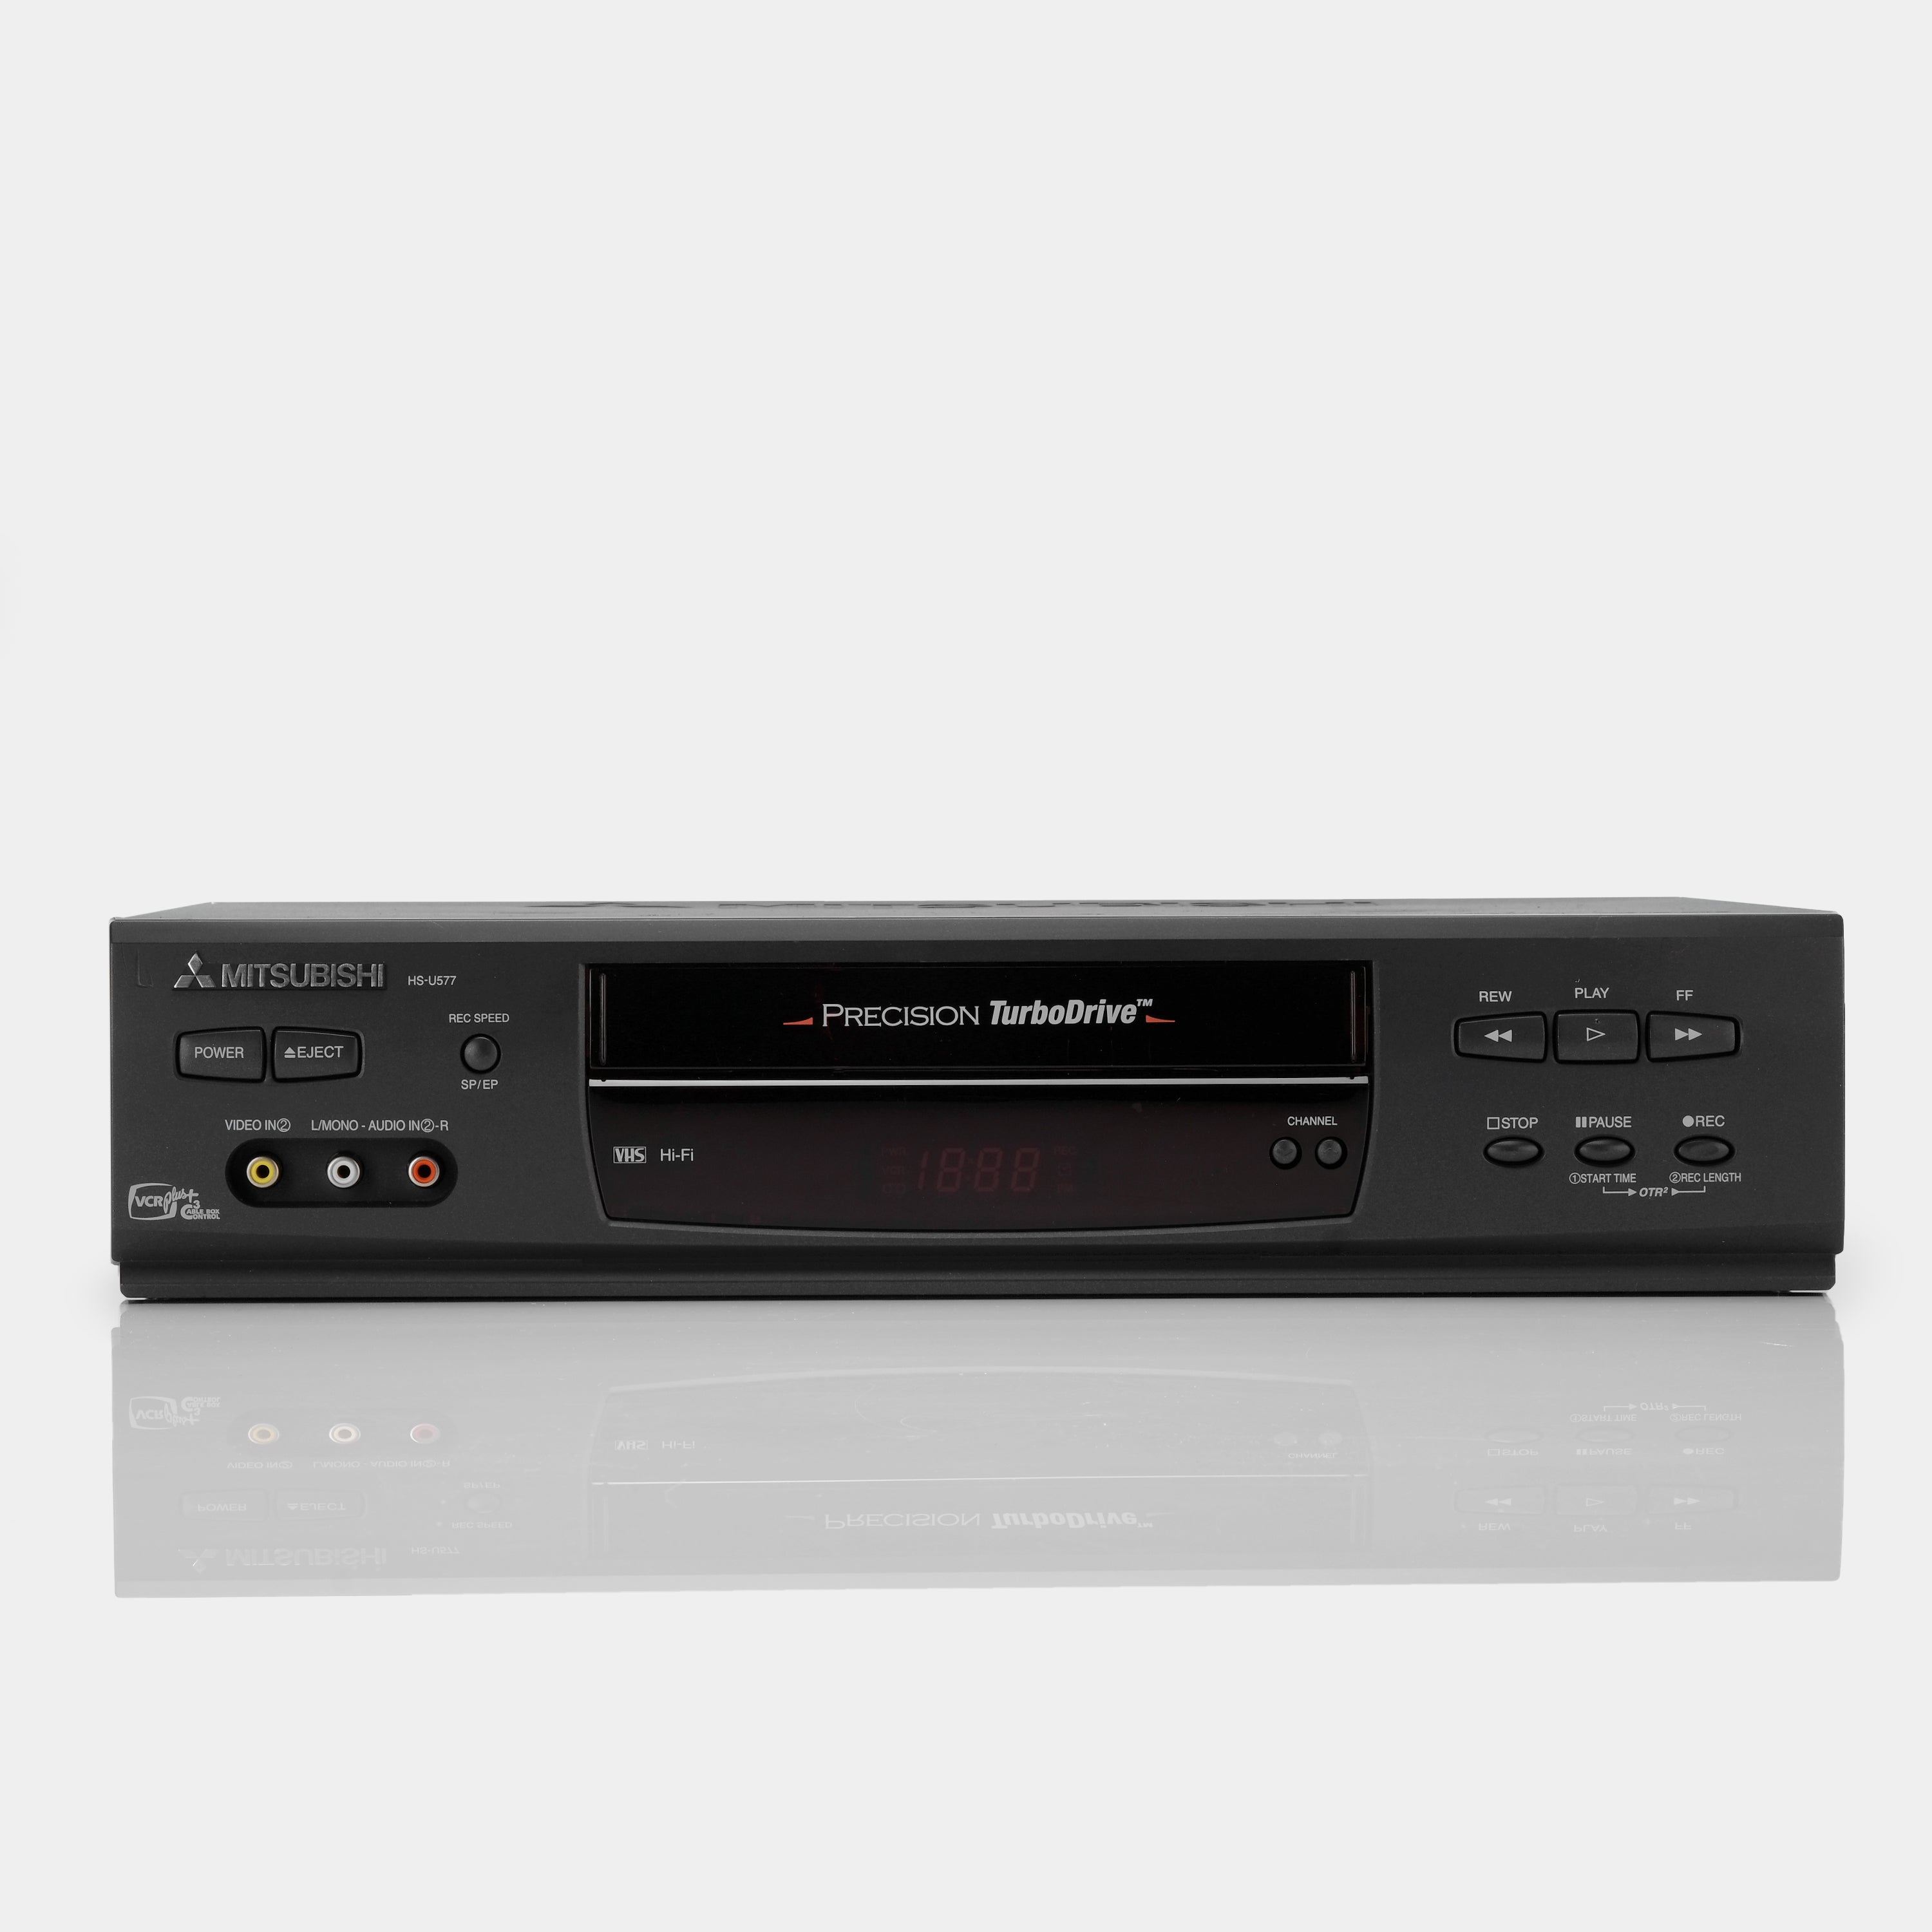 Mitsubishi HS-U577 VCR VHS Player